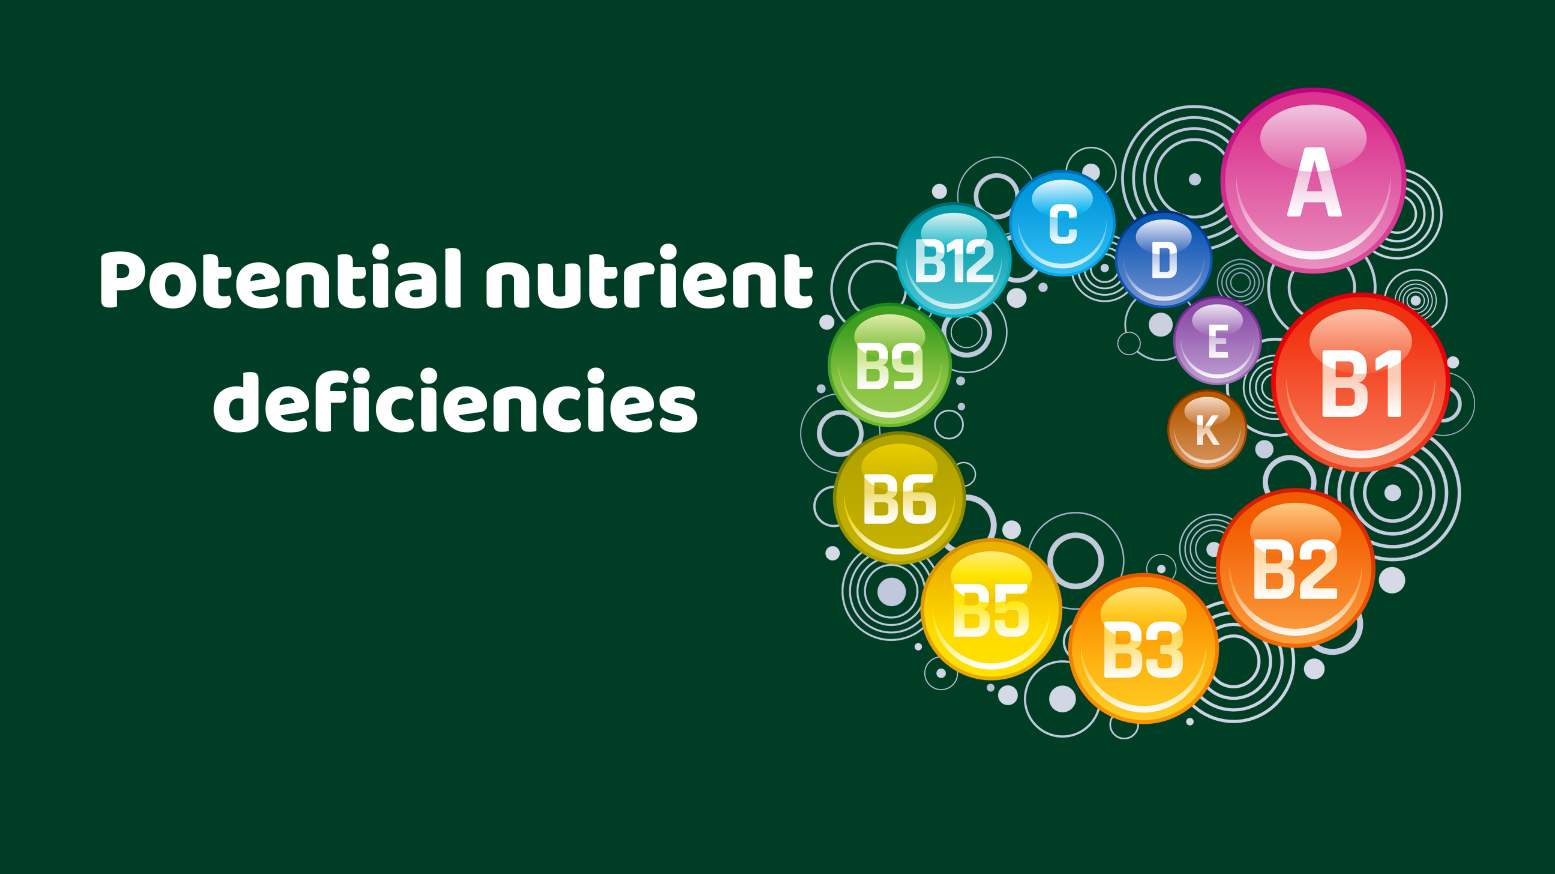 Potential nutrient deficiencies